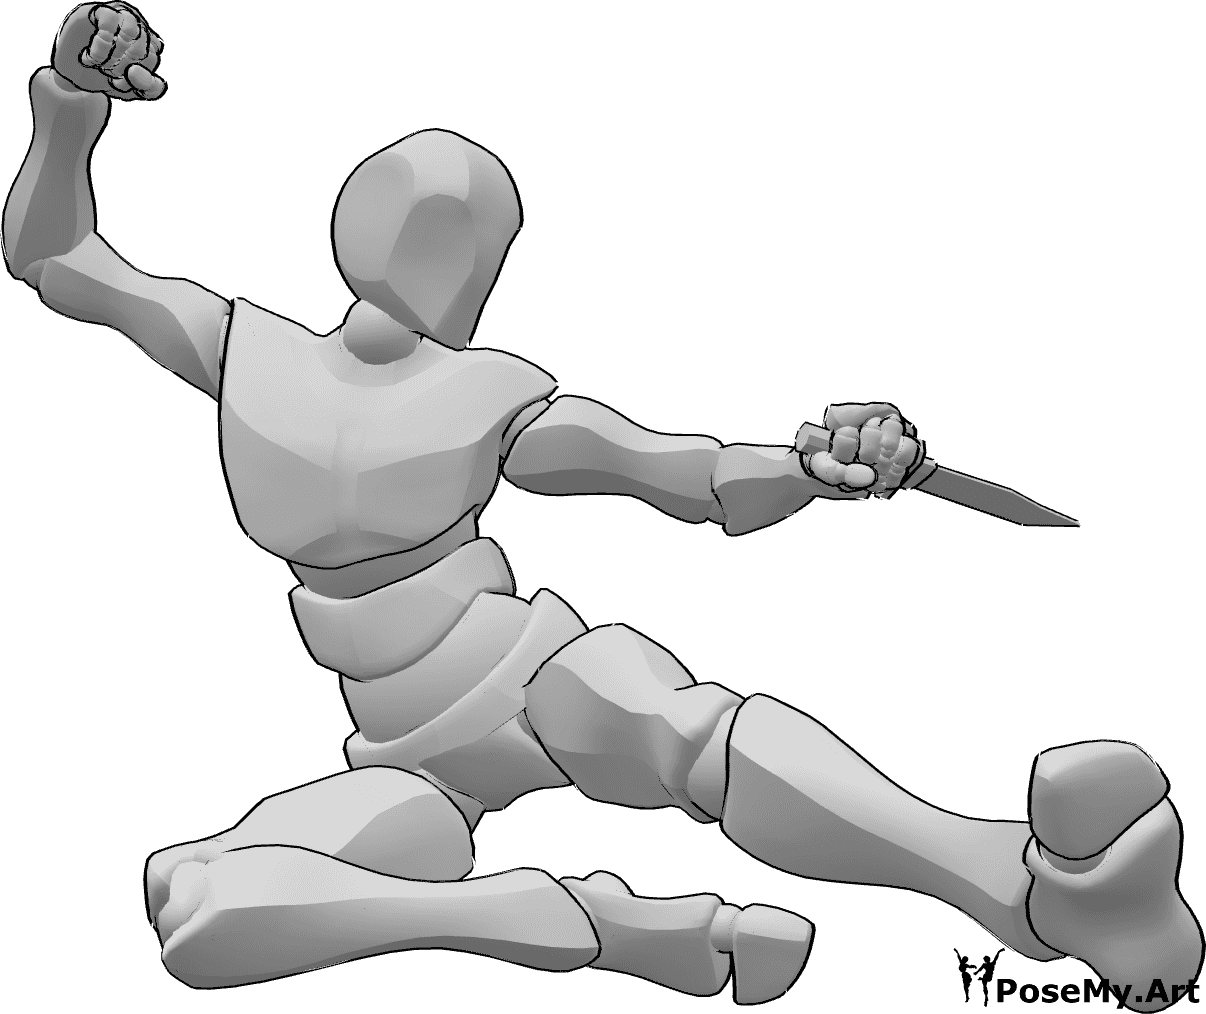 Referencia de poses- Postura de ataque con patada lateral - Macho atacando, saltando alto y dando patadas laterales, empuñando una daga.